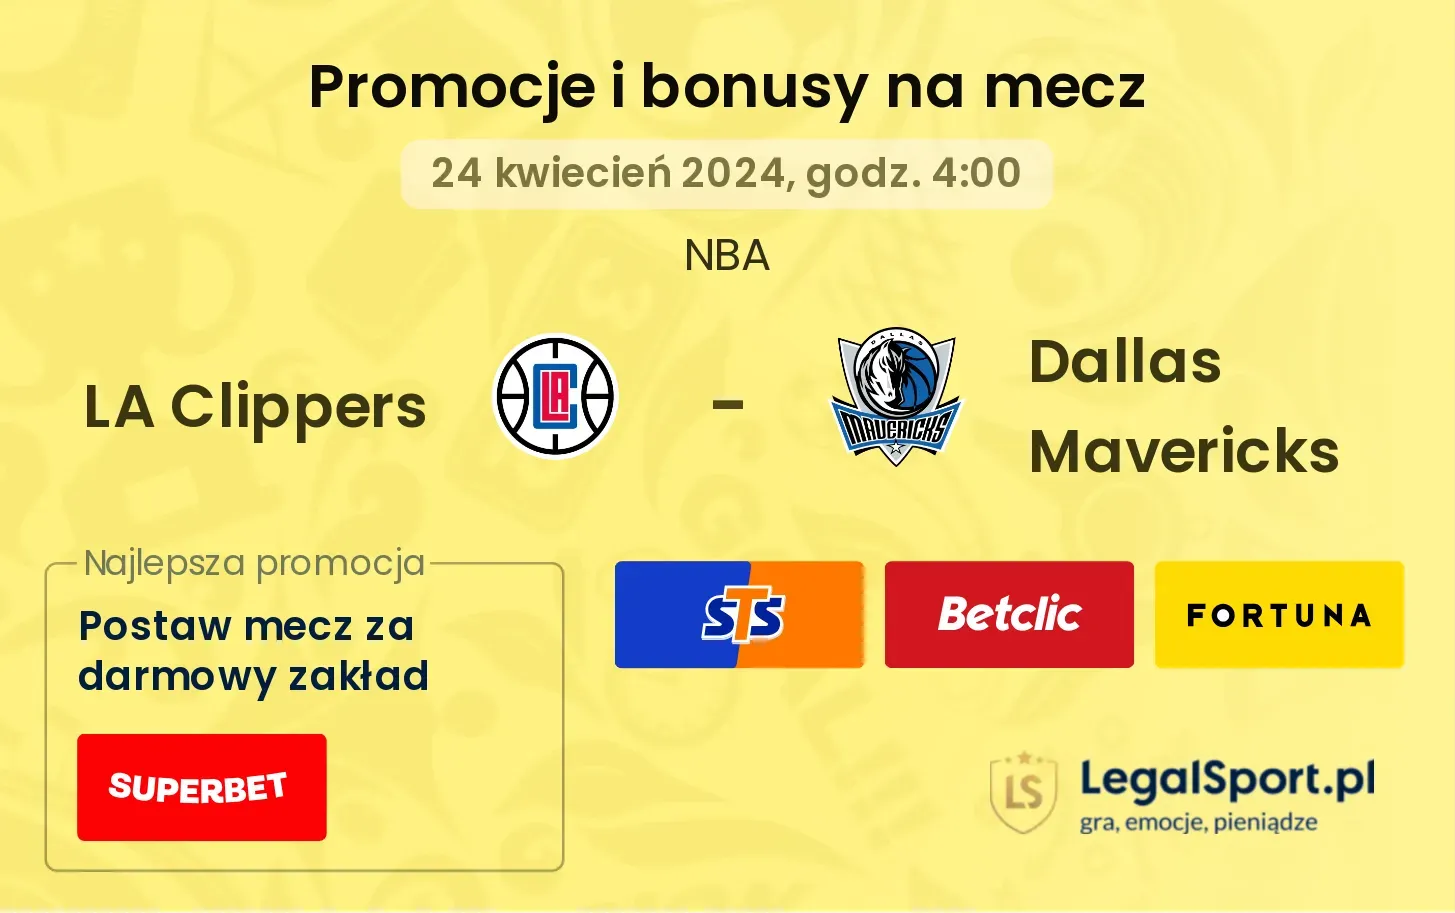 LA Clippers - Dallas Mavericks promocje bonusy na mecz